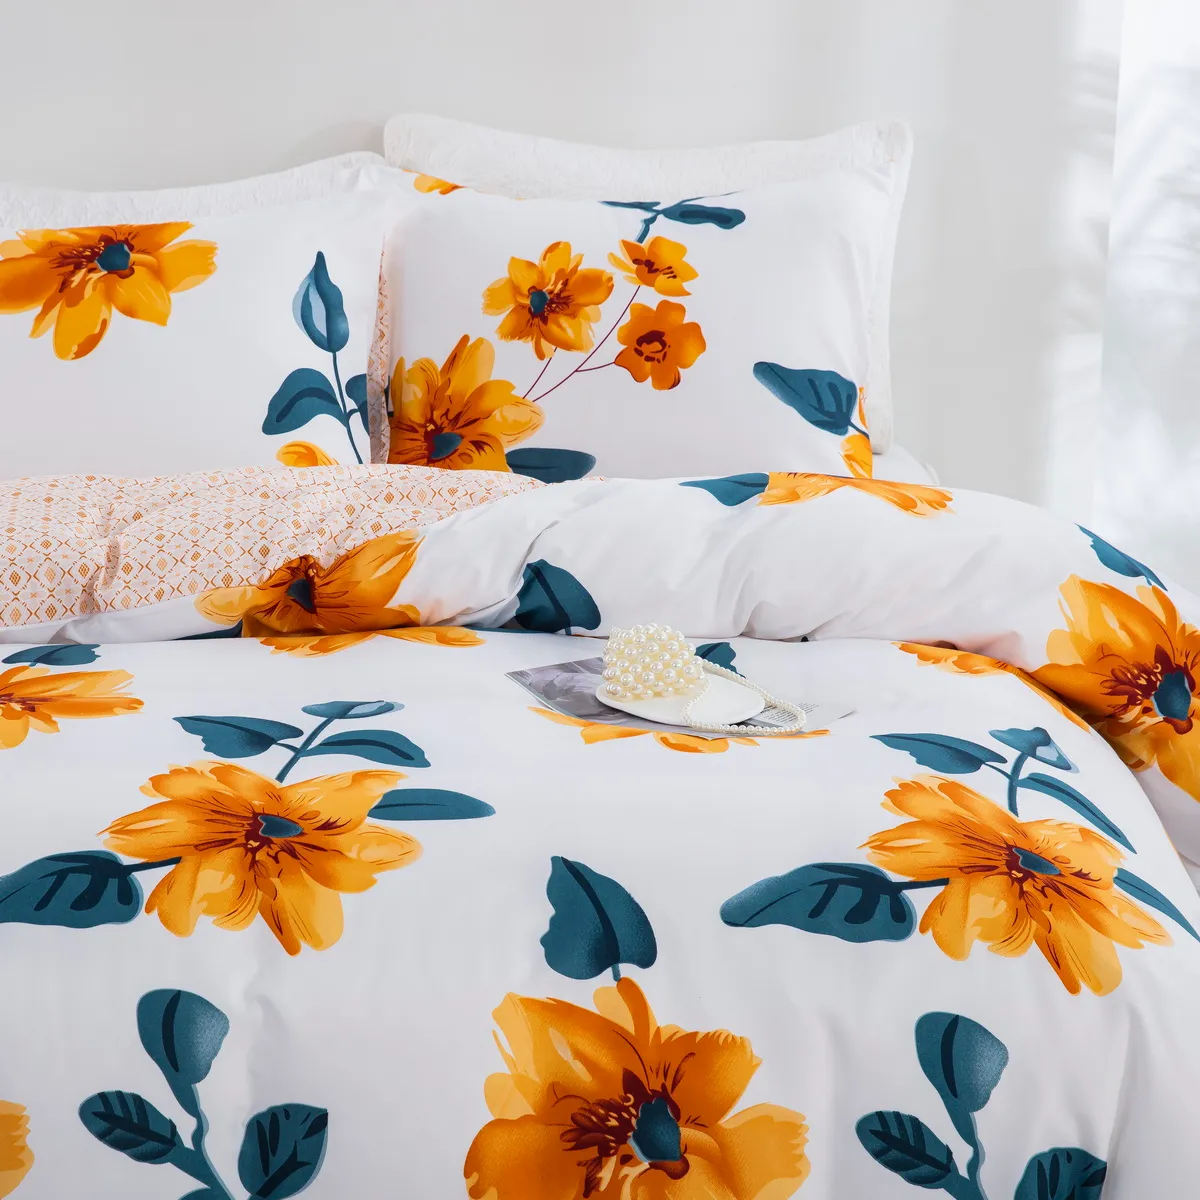 2/3pcs doux et confortable Jacquard Daisy Design Bedding Set, comprend une housse de couette et des taies d’oreiller multicolore big image 1